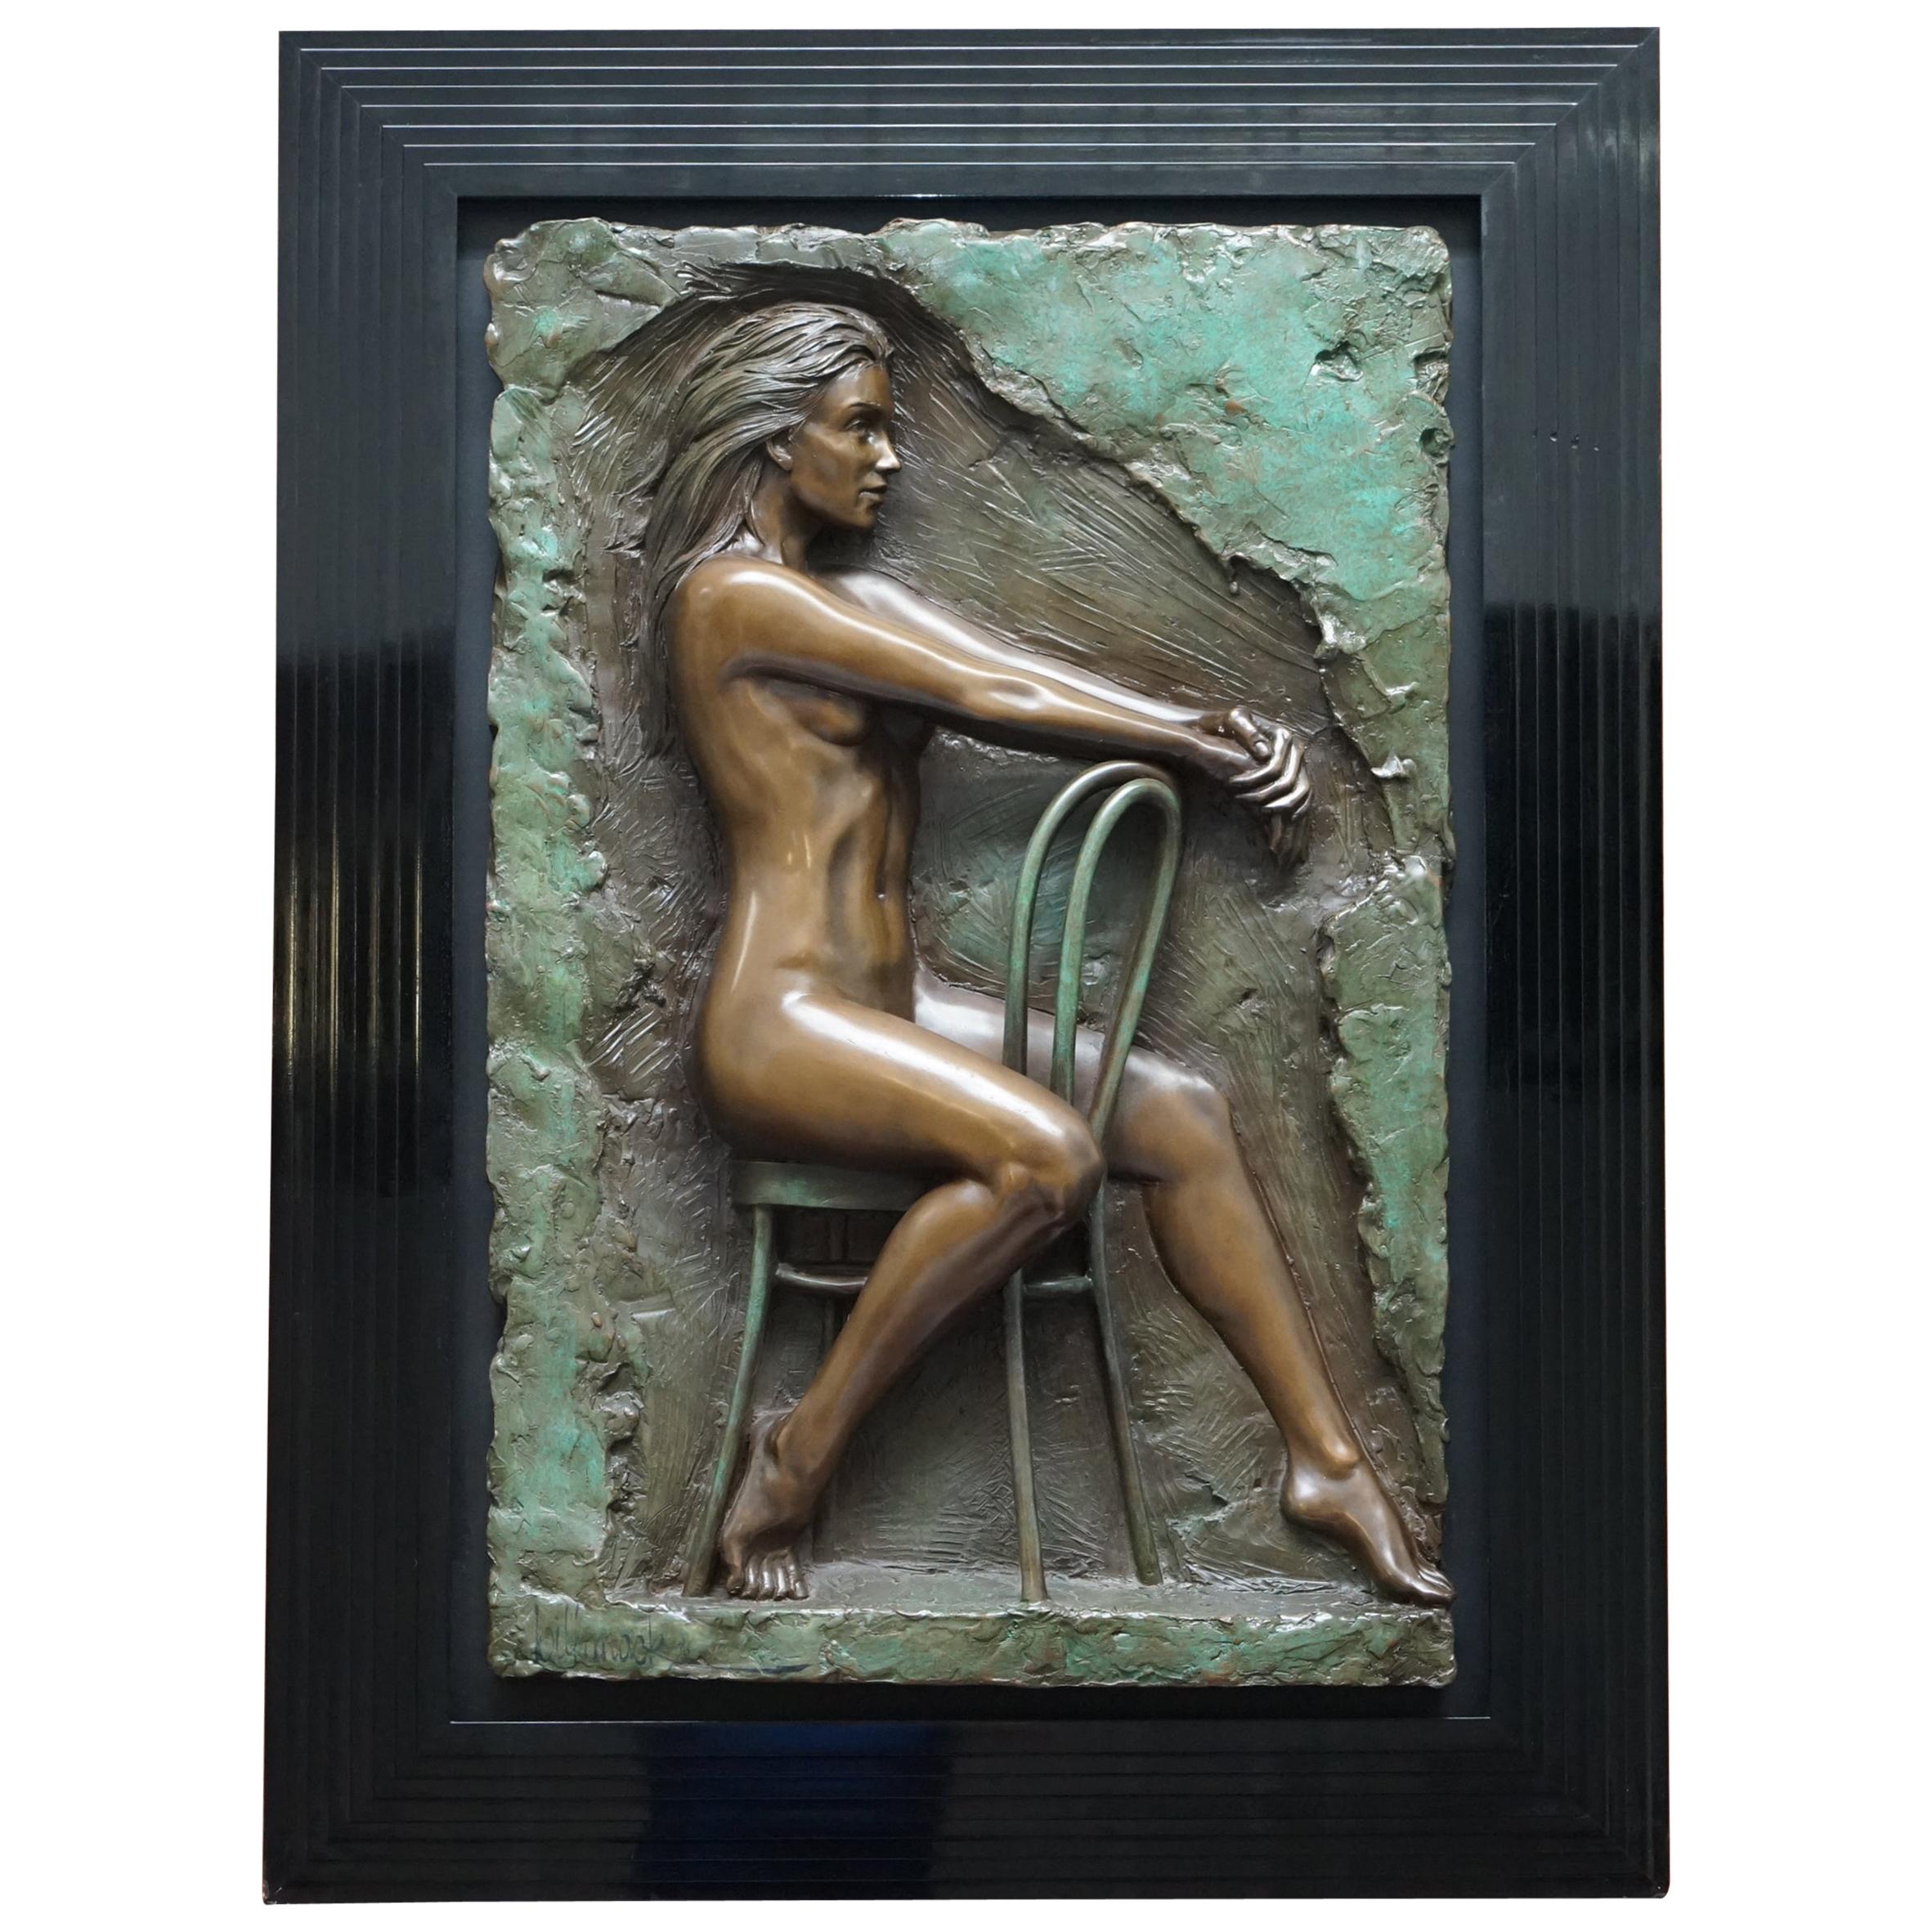 Limitierte Auflage 78/95 Bill Mack signierte Bronzestatue-Bilder-Gemälde mit dem Titel Solitude